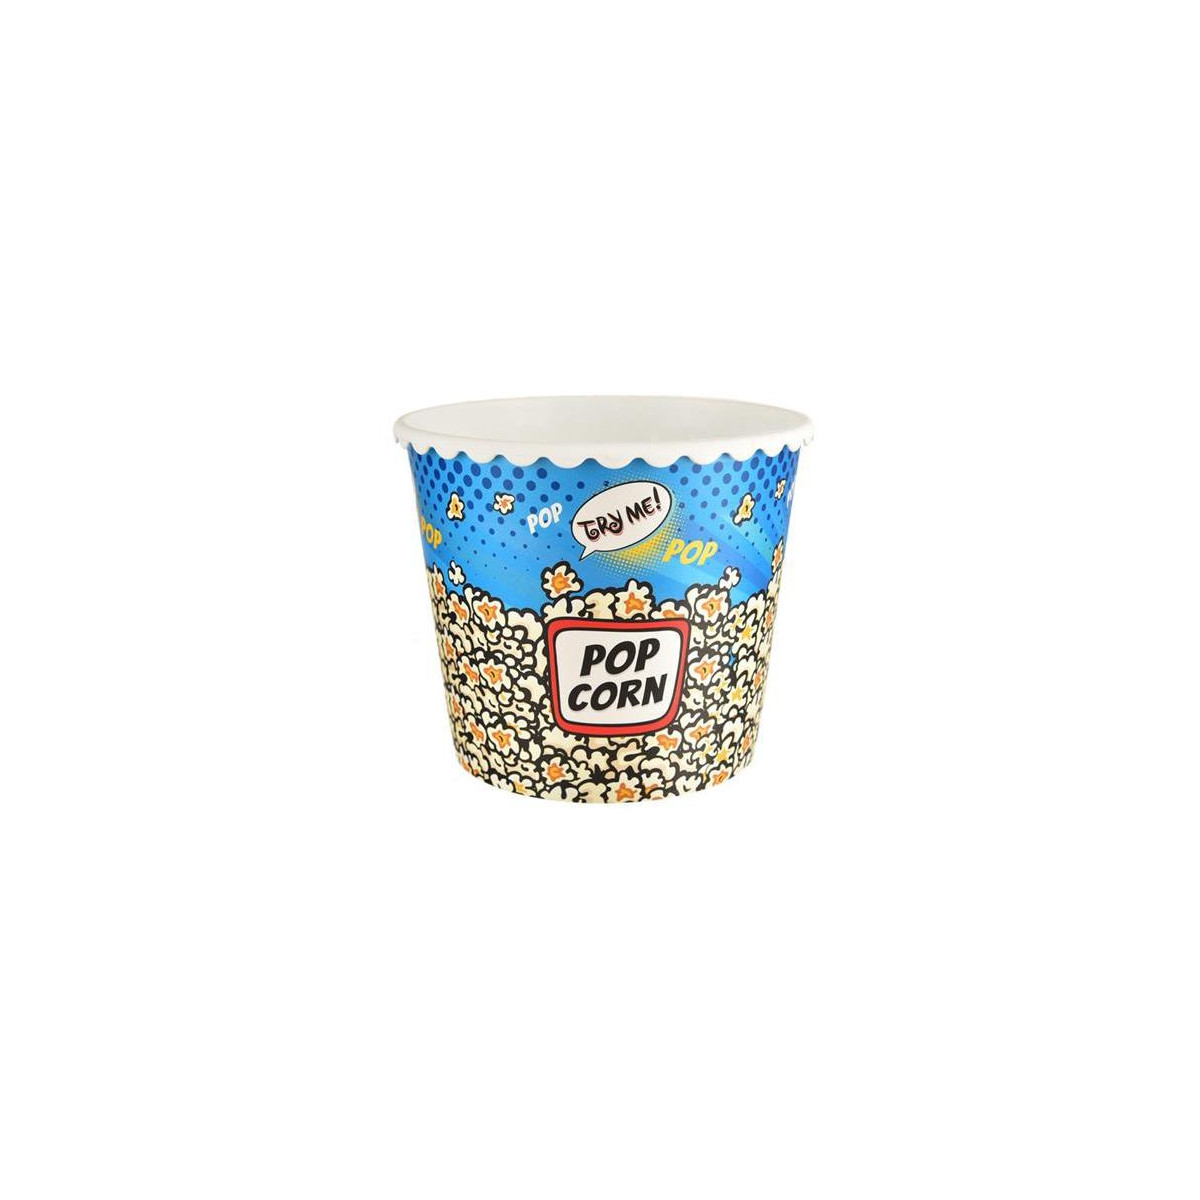 Kyblík na popkorn ORION Popcorn 2,3l